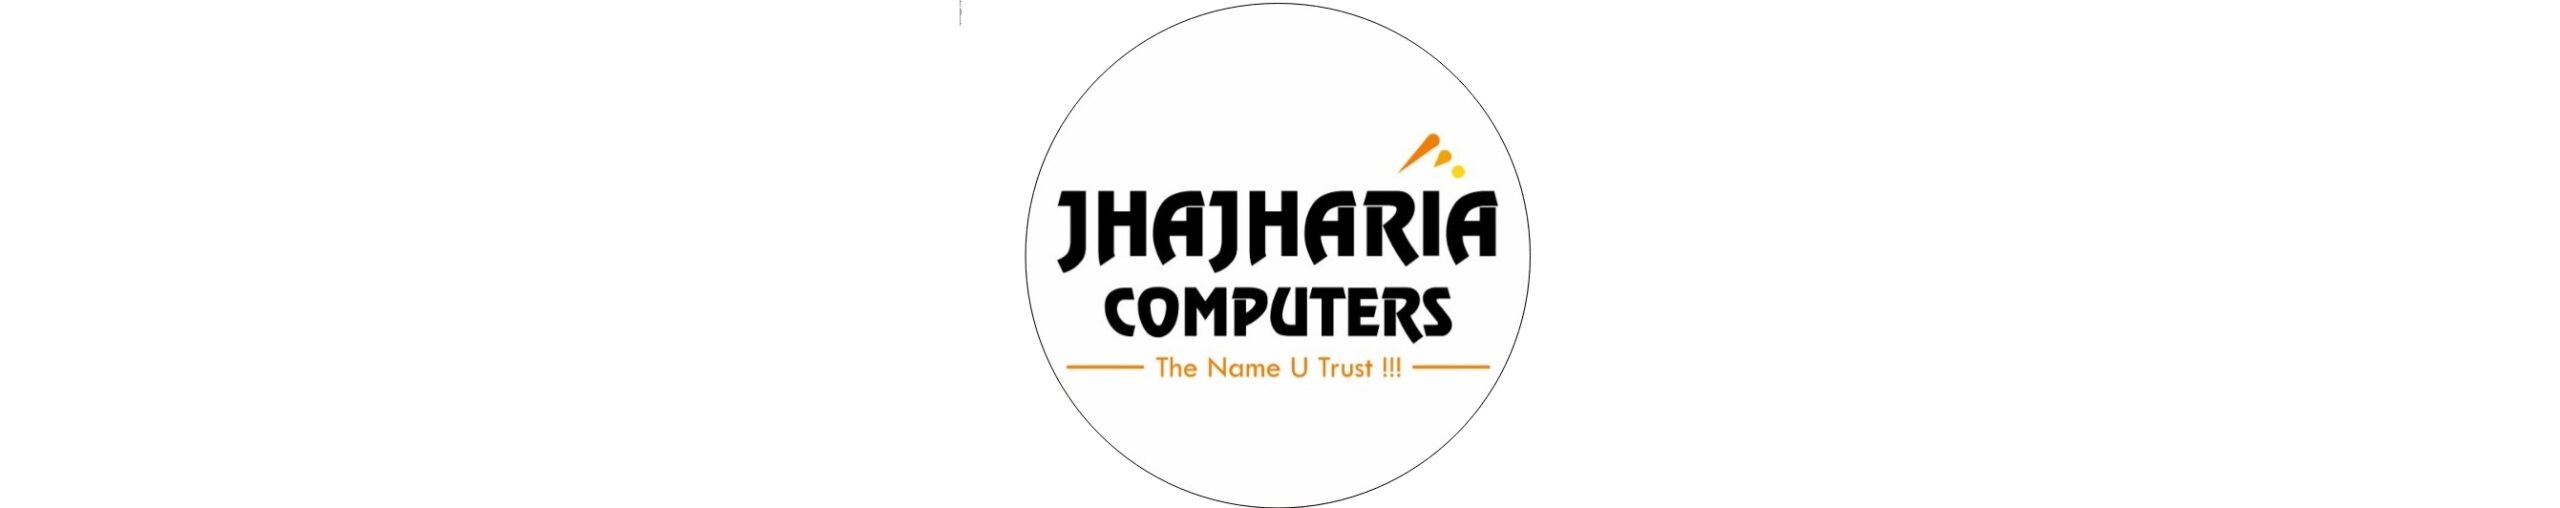 Jhajharia Computers (2)